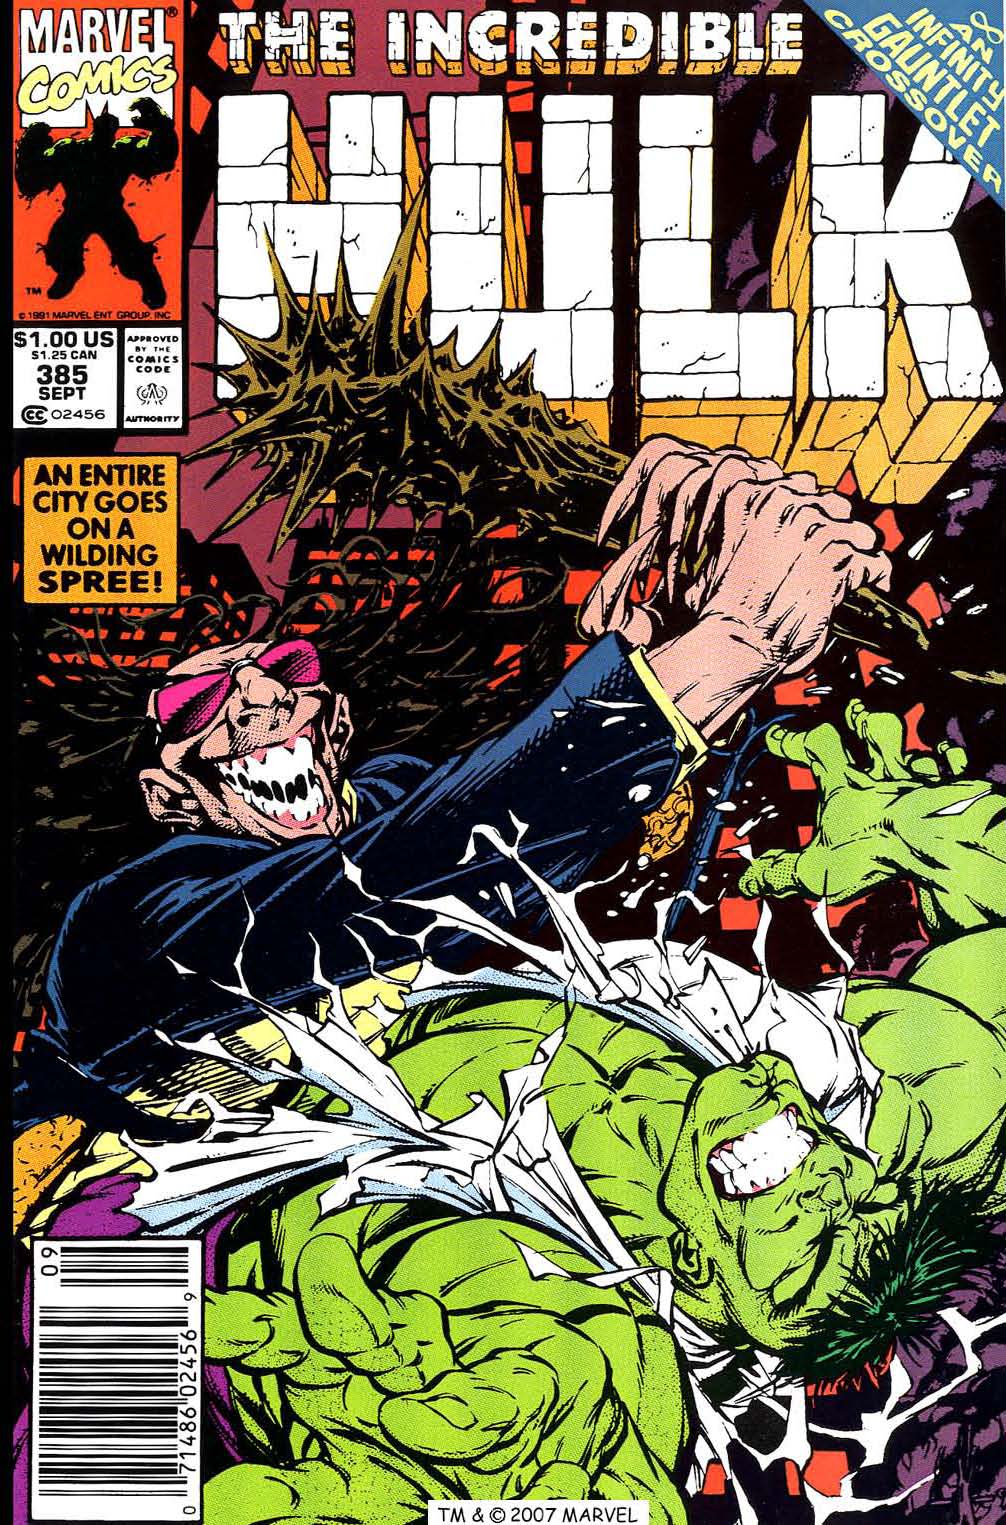 The Incredible Hulk Vol. 1 #385